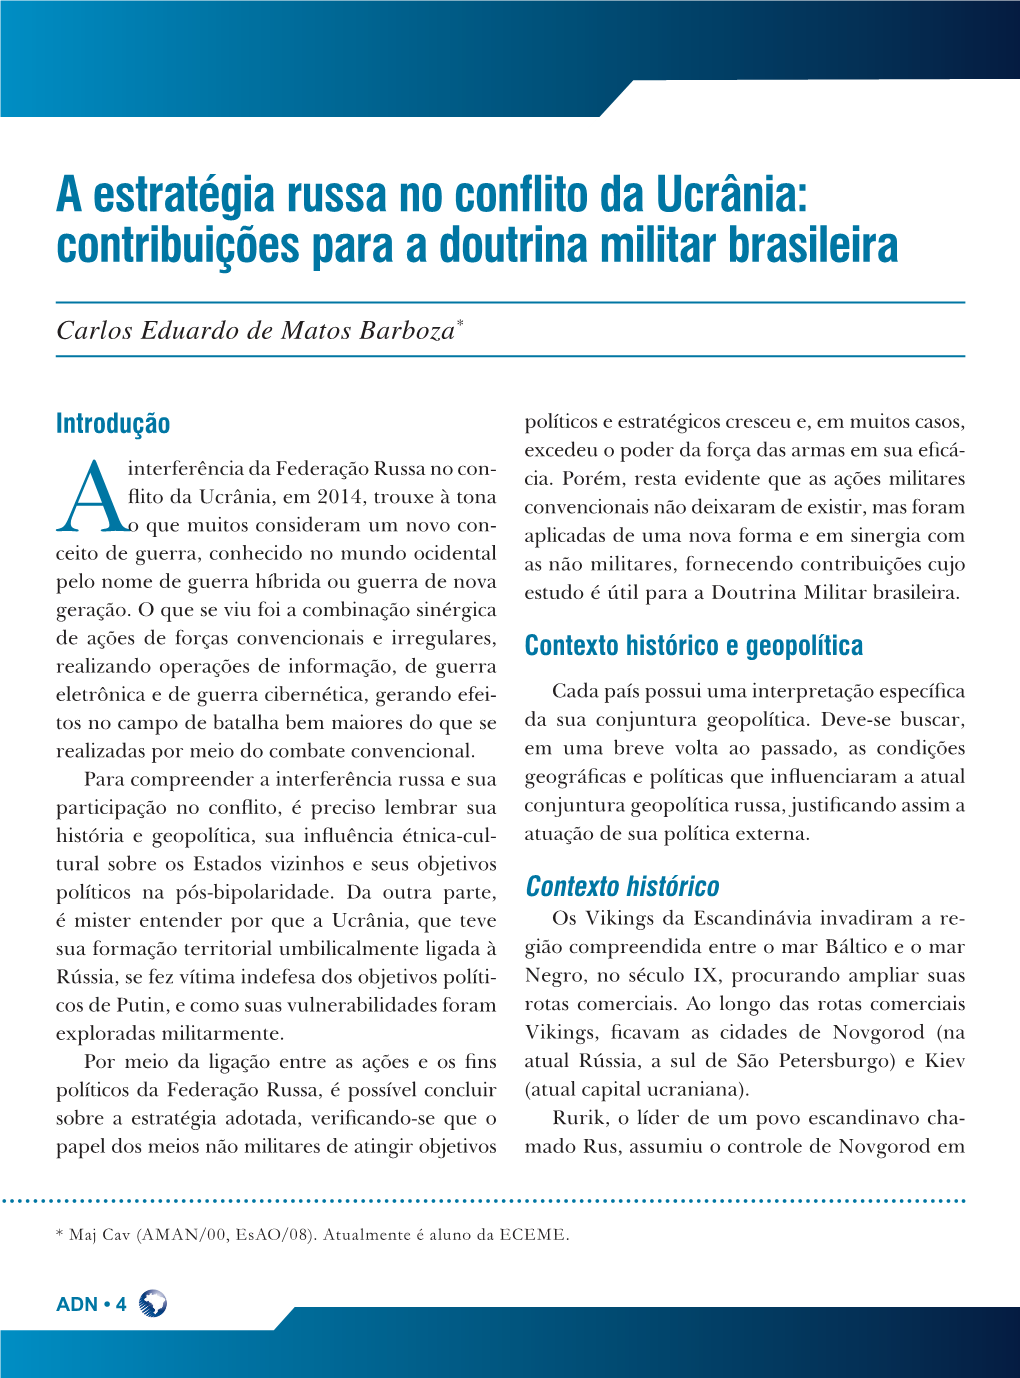 A Estratégia Russa No Conflito Da Ucrânia: Contribuições Para a Doutrina Militar Brasileira